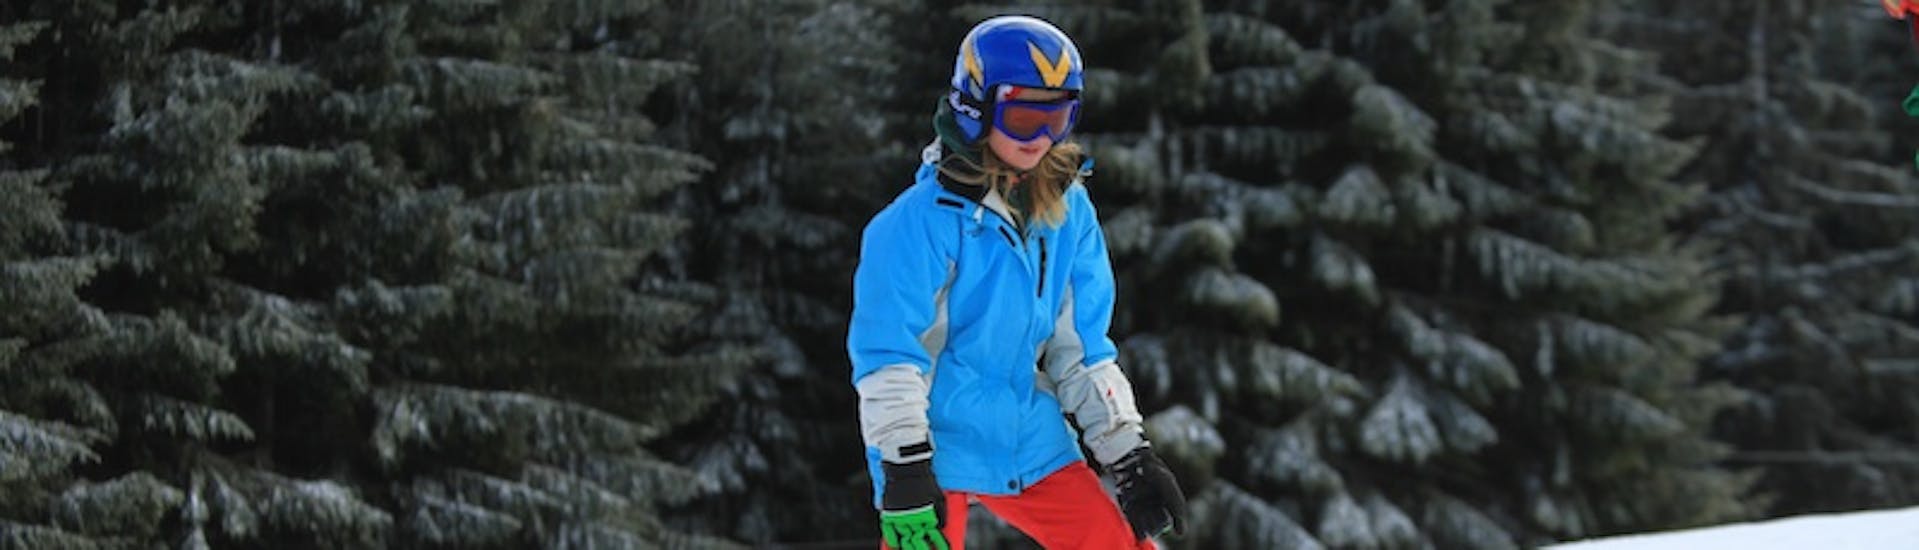 Mädchen abfahrend im Schnepflug während Privater Kinder-Skikurs für alle Levels mit Skischule Nova.